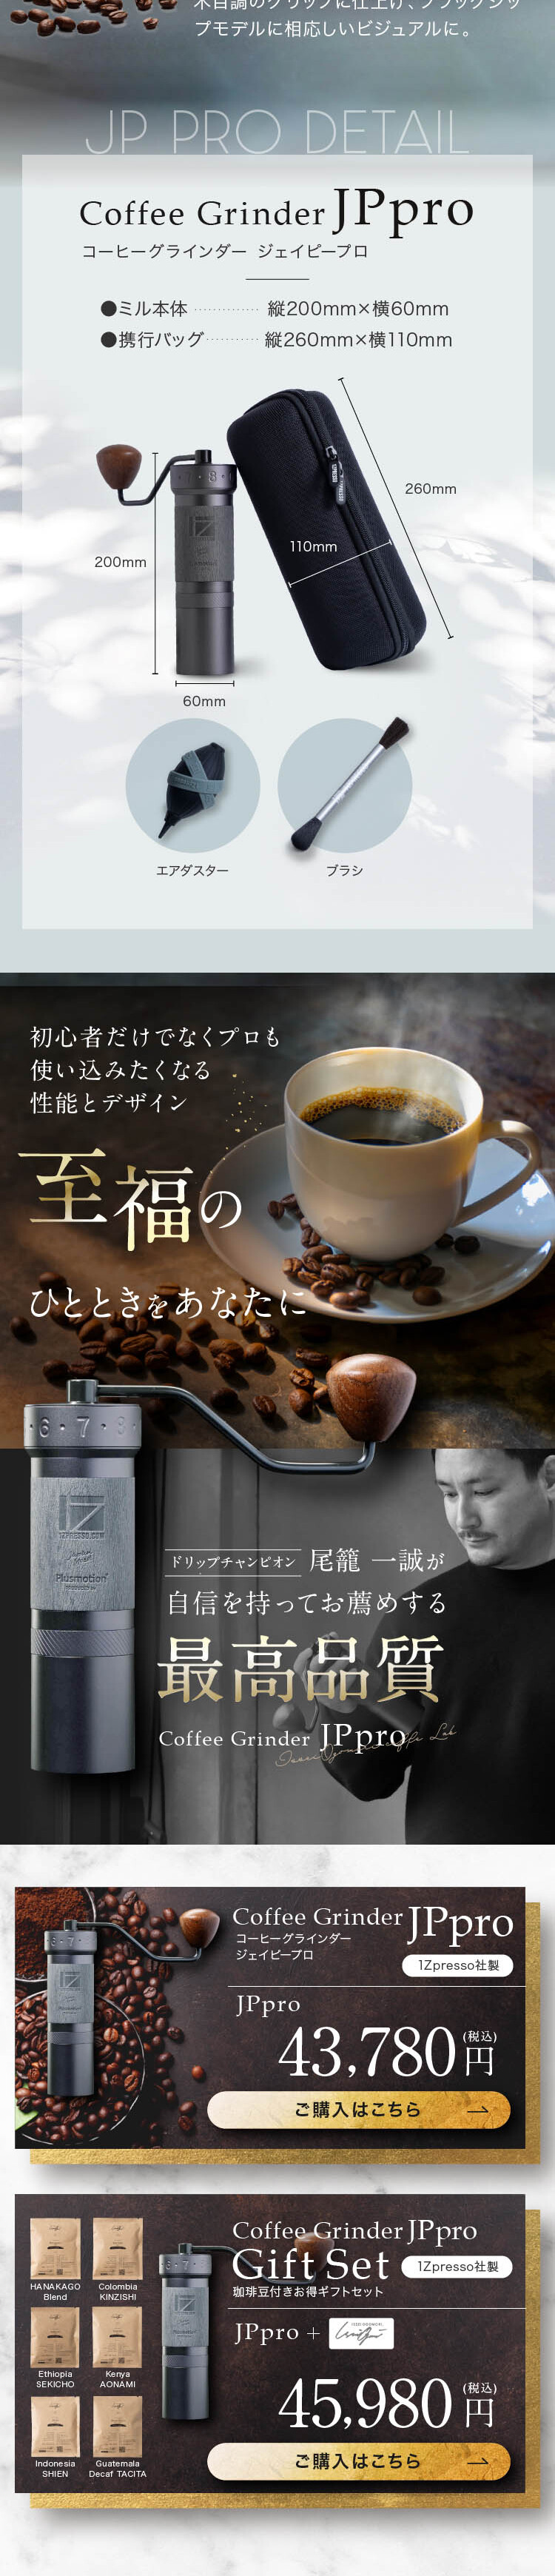 コーヒーグラインダー JPpro_sp_2